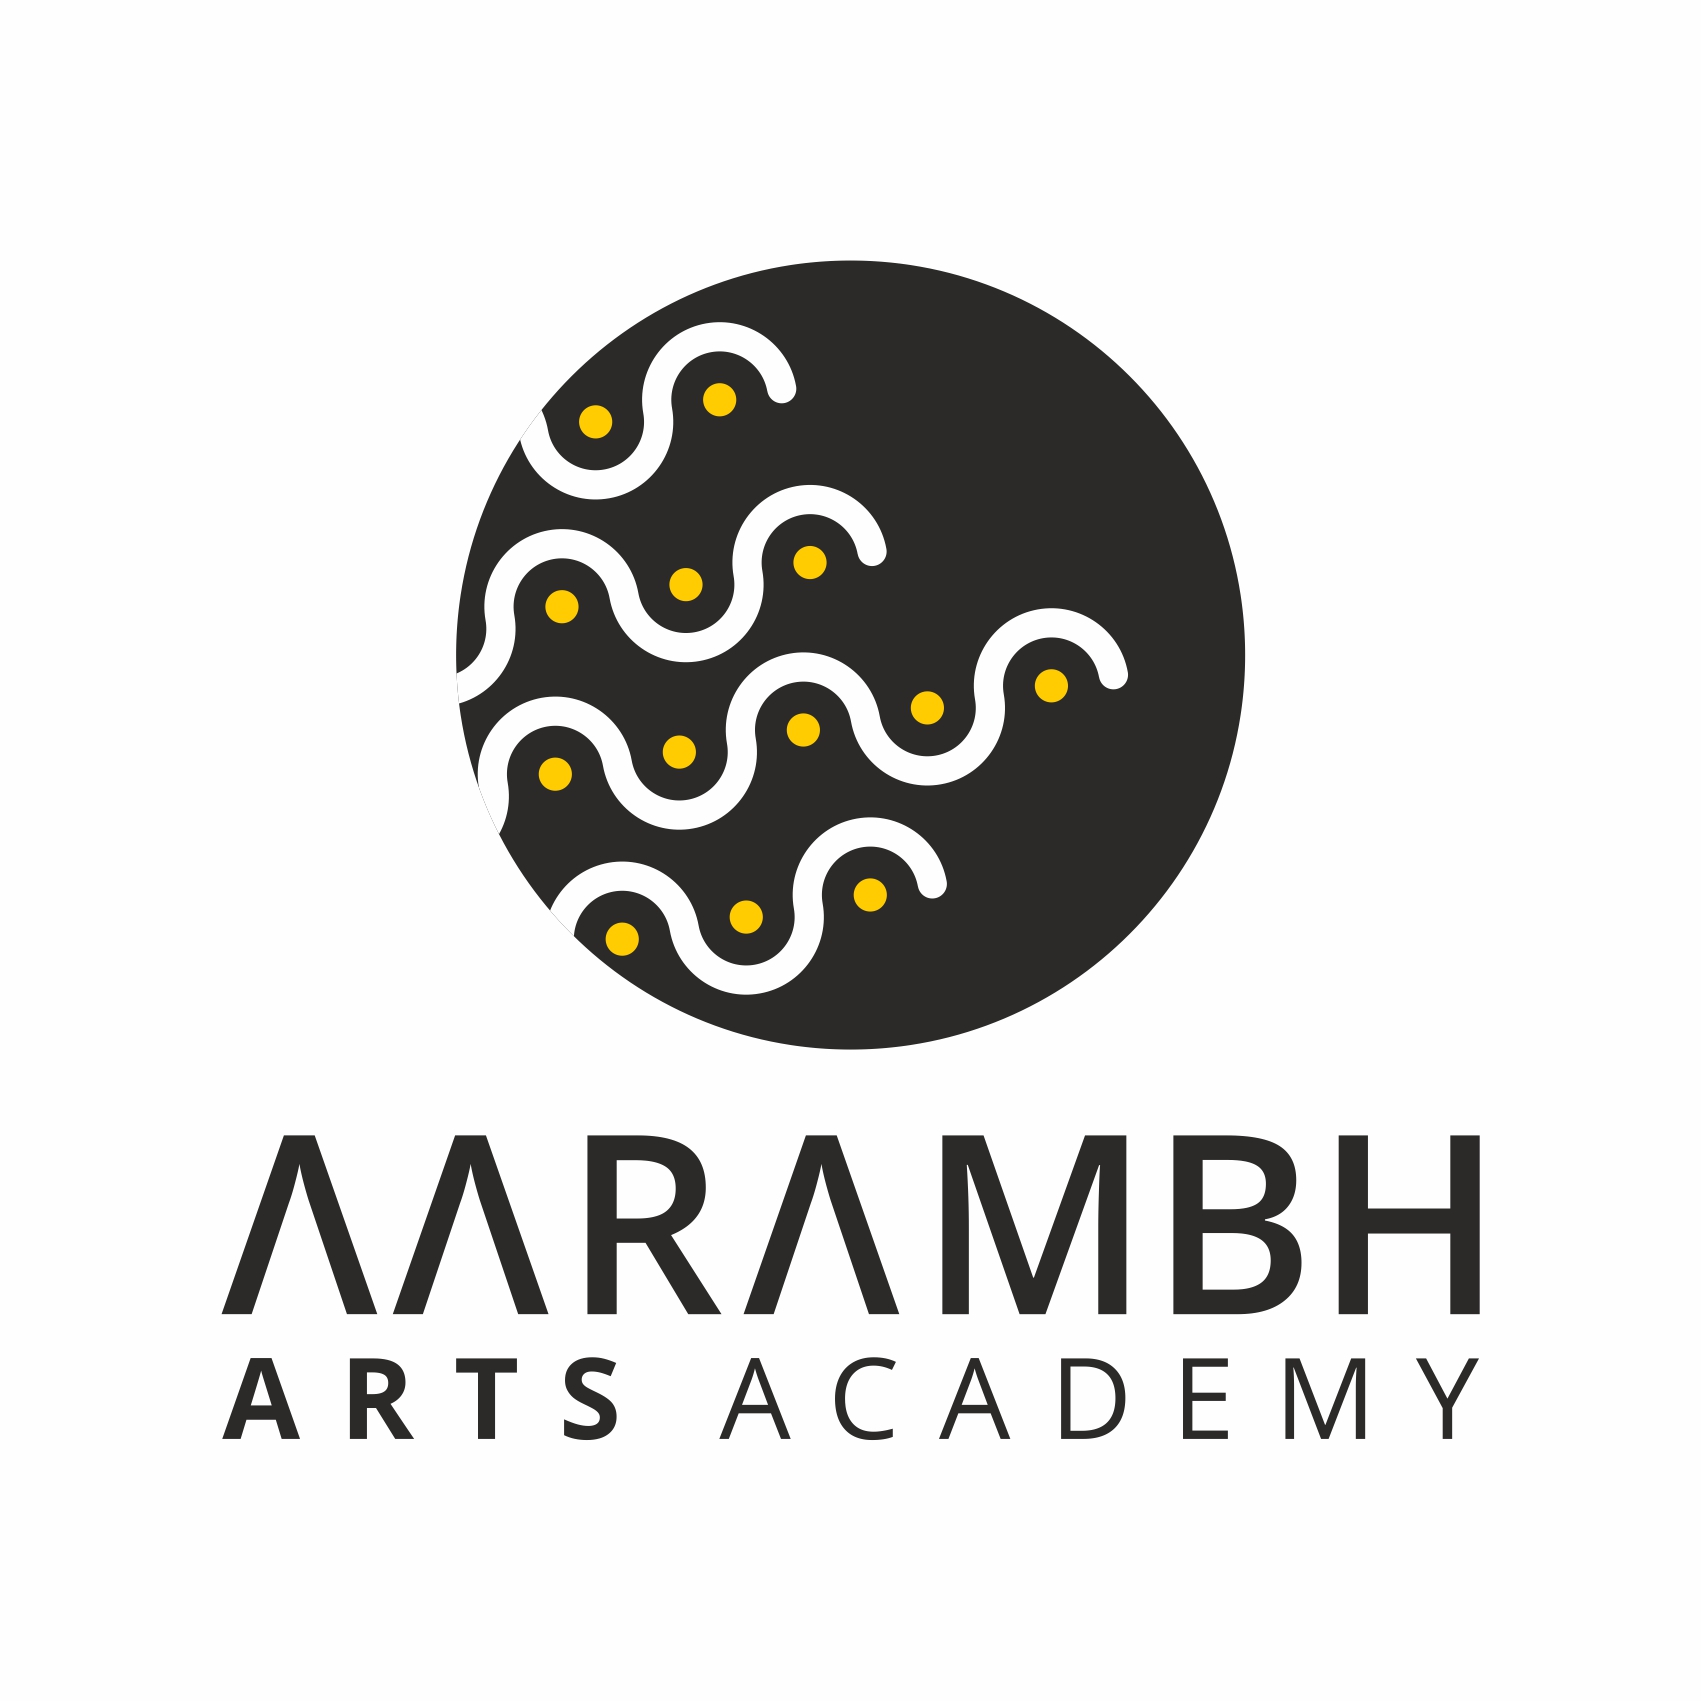 Aarambh Arts Academy - 